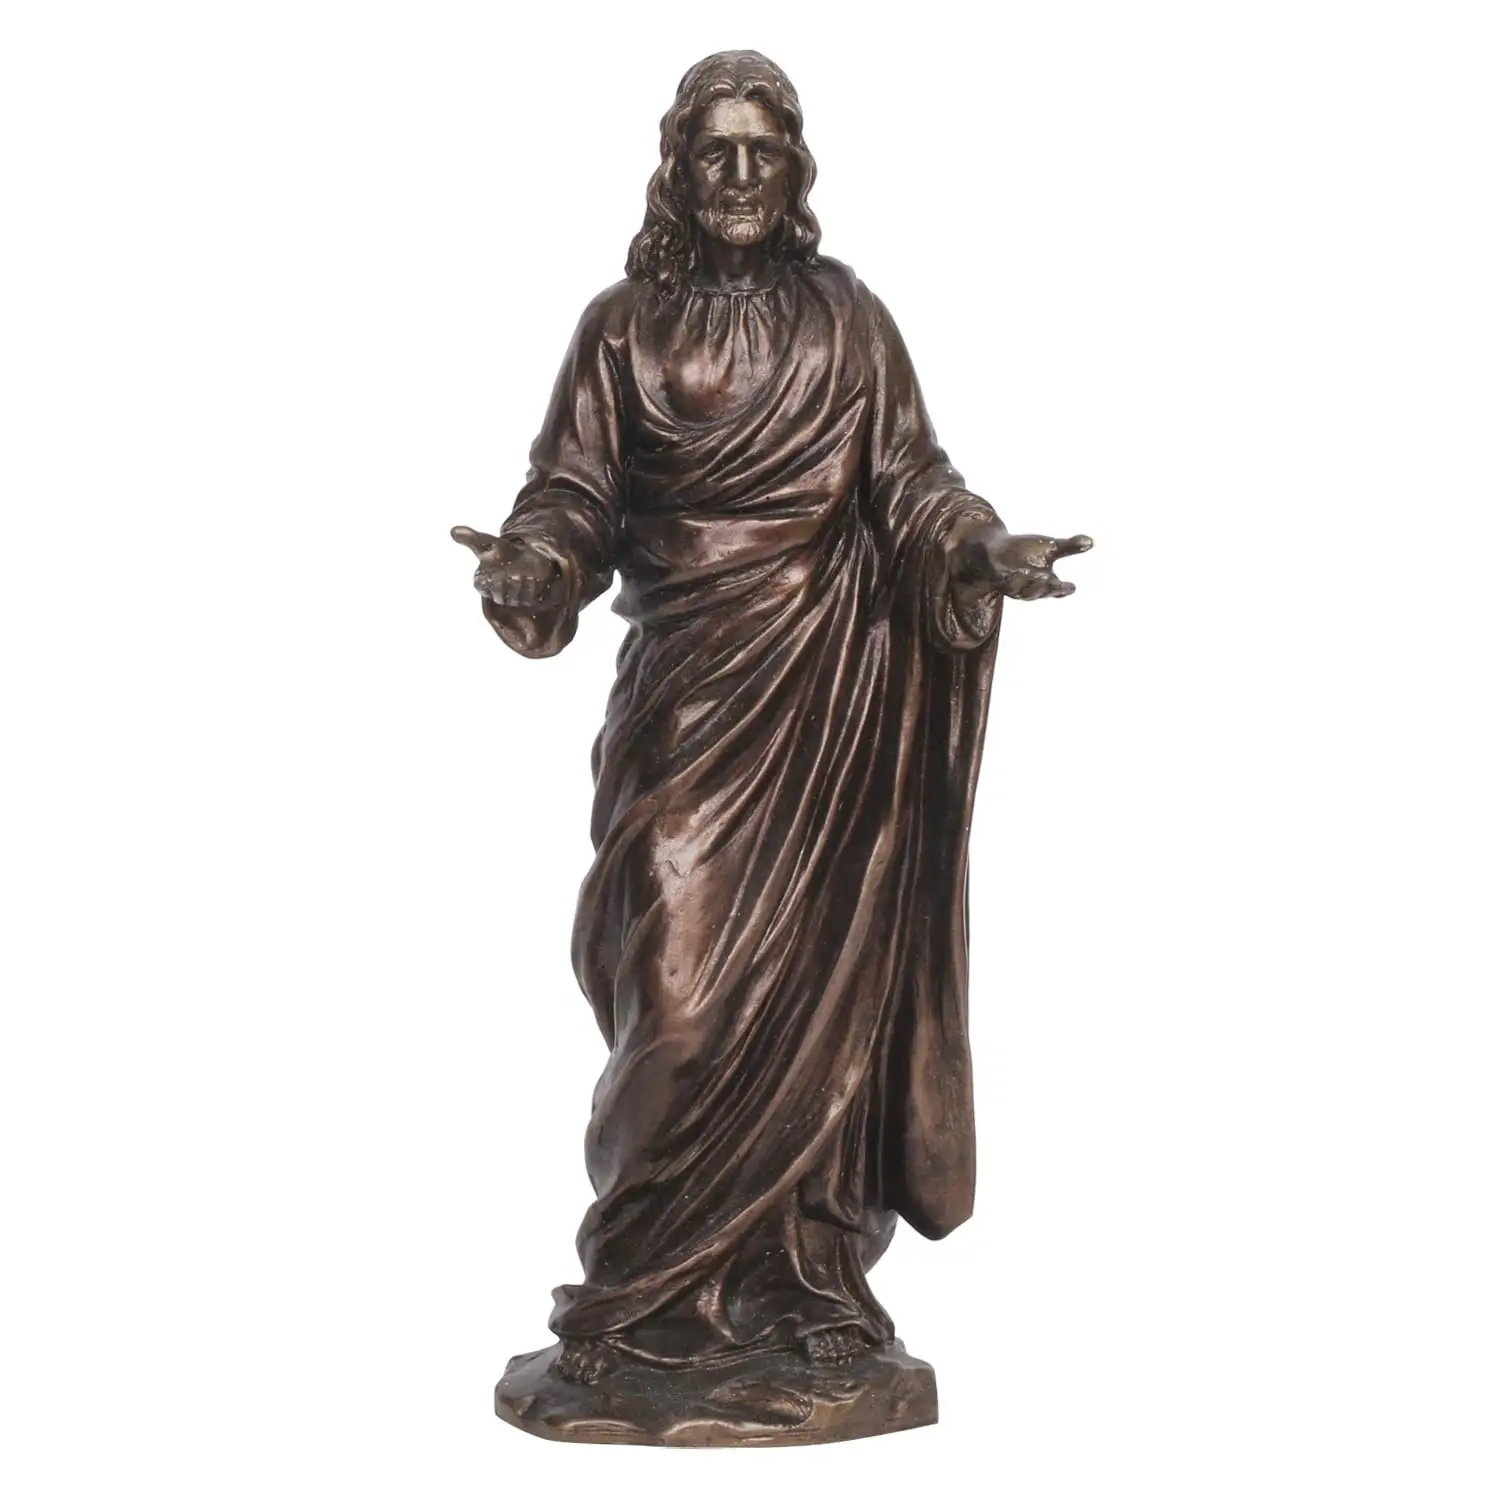 9 pollici Gesù Cristo colata a freddo statua di resina decorazione per la casa dio idolo pezzo forte a prezzi all'ingrosso dall'India